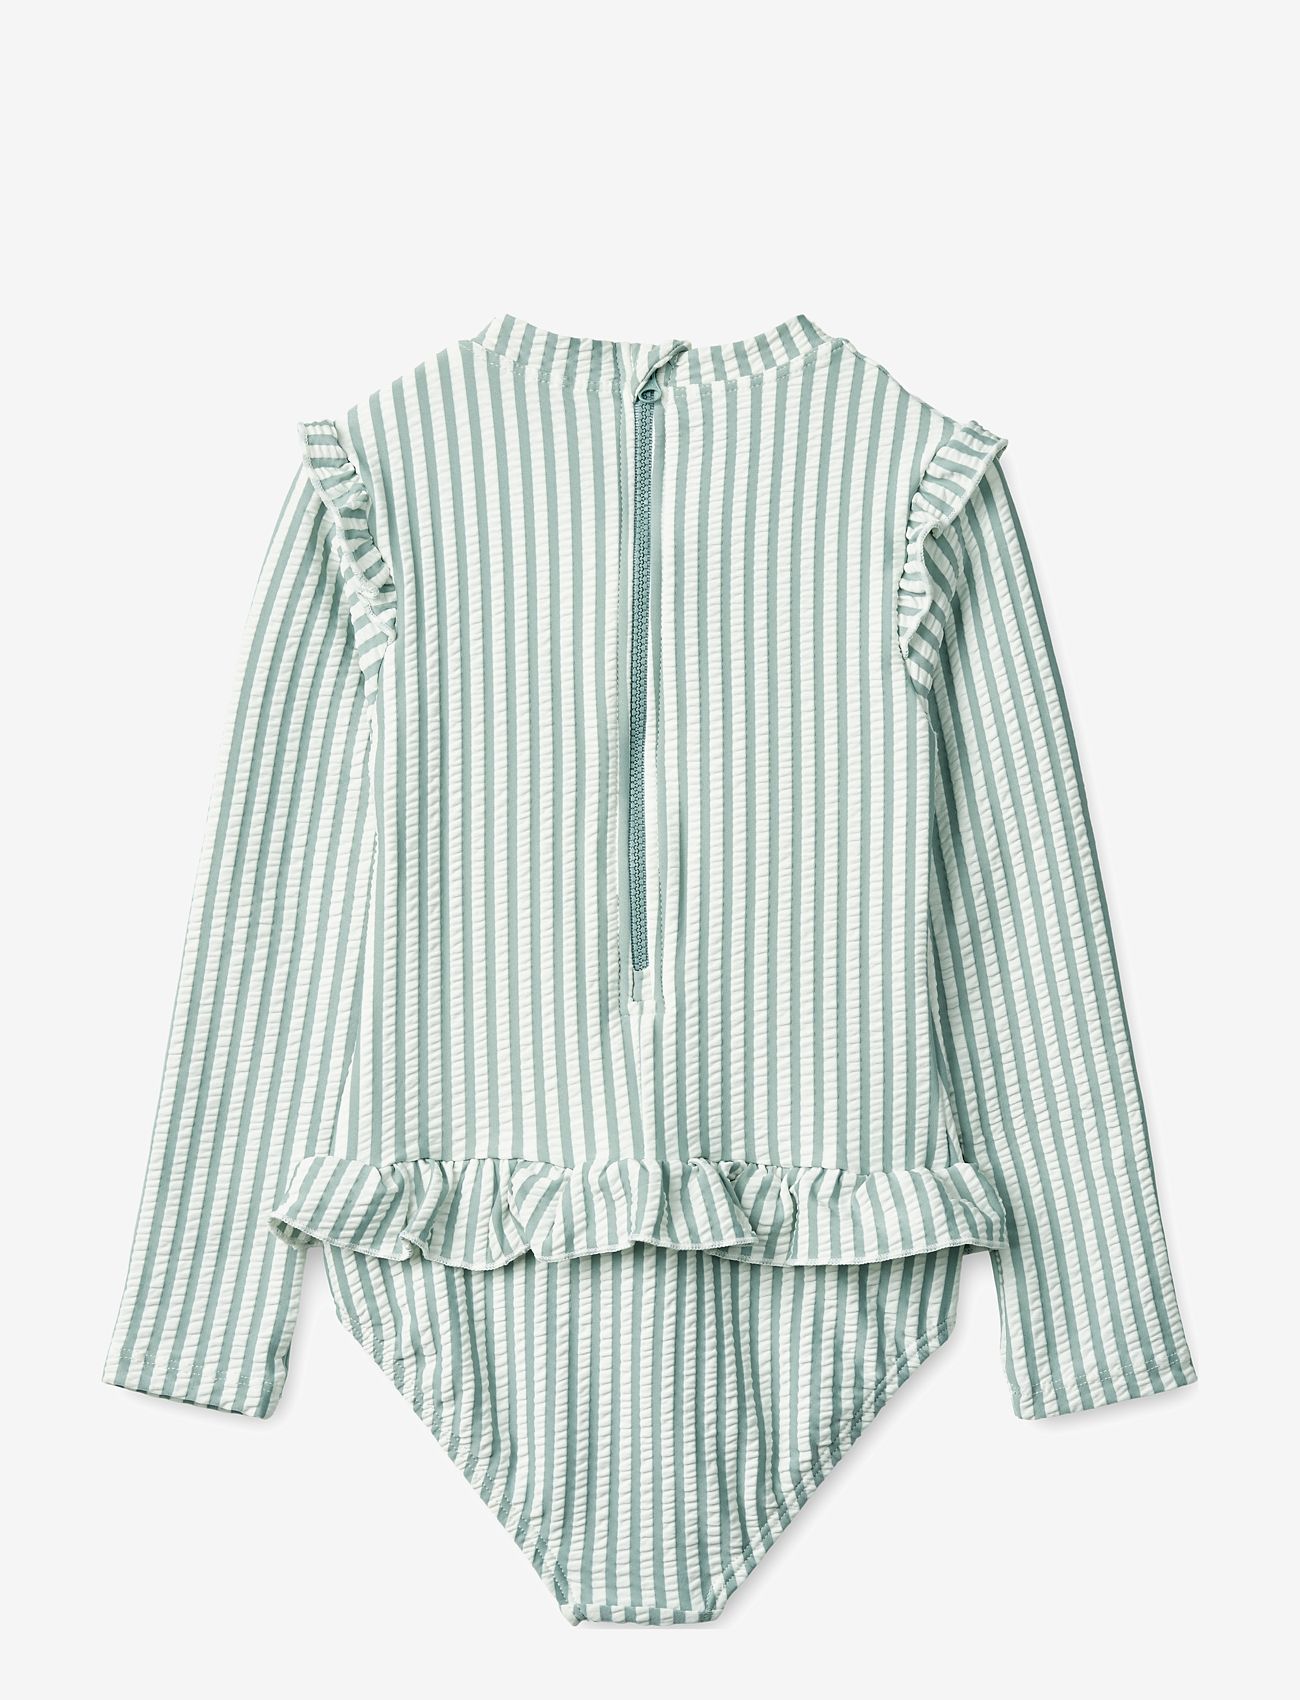 Liewood - Sille seersucker swimsuit - sommerschnäppchen - y/d stripe: sea blue/white - 1